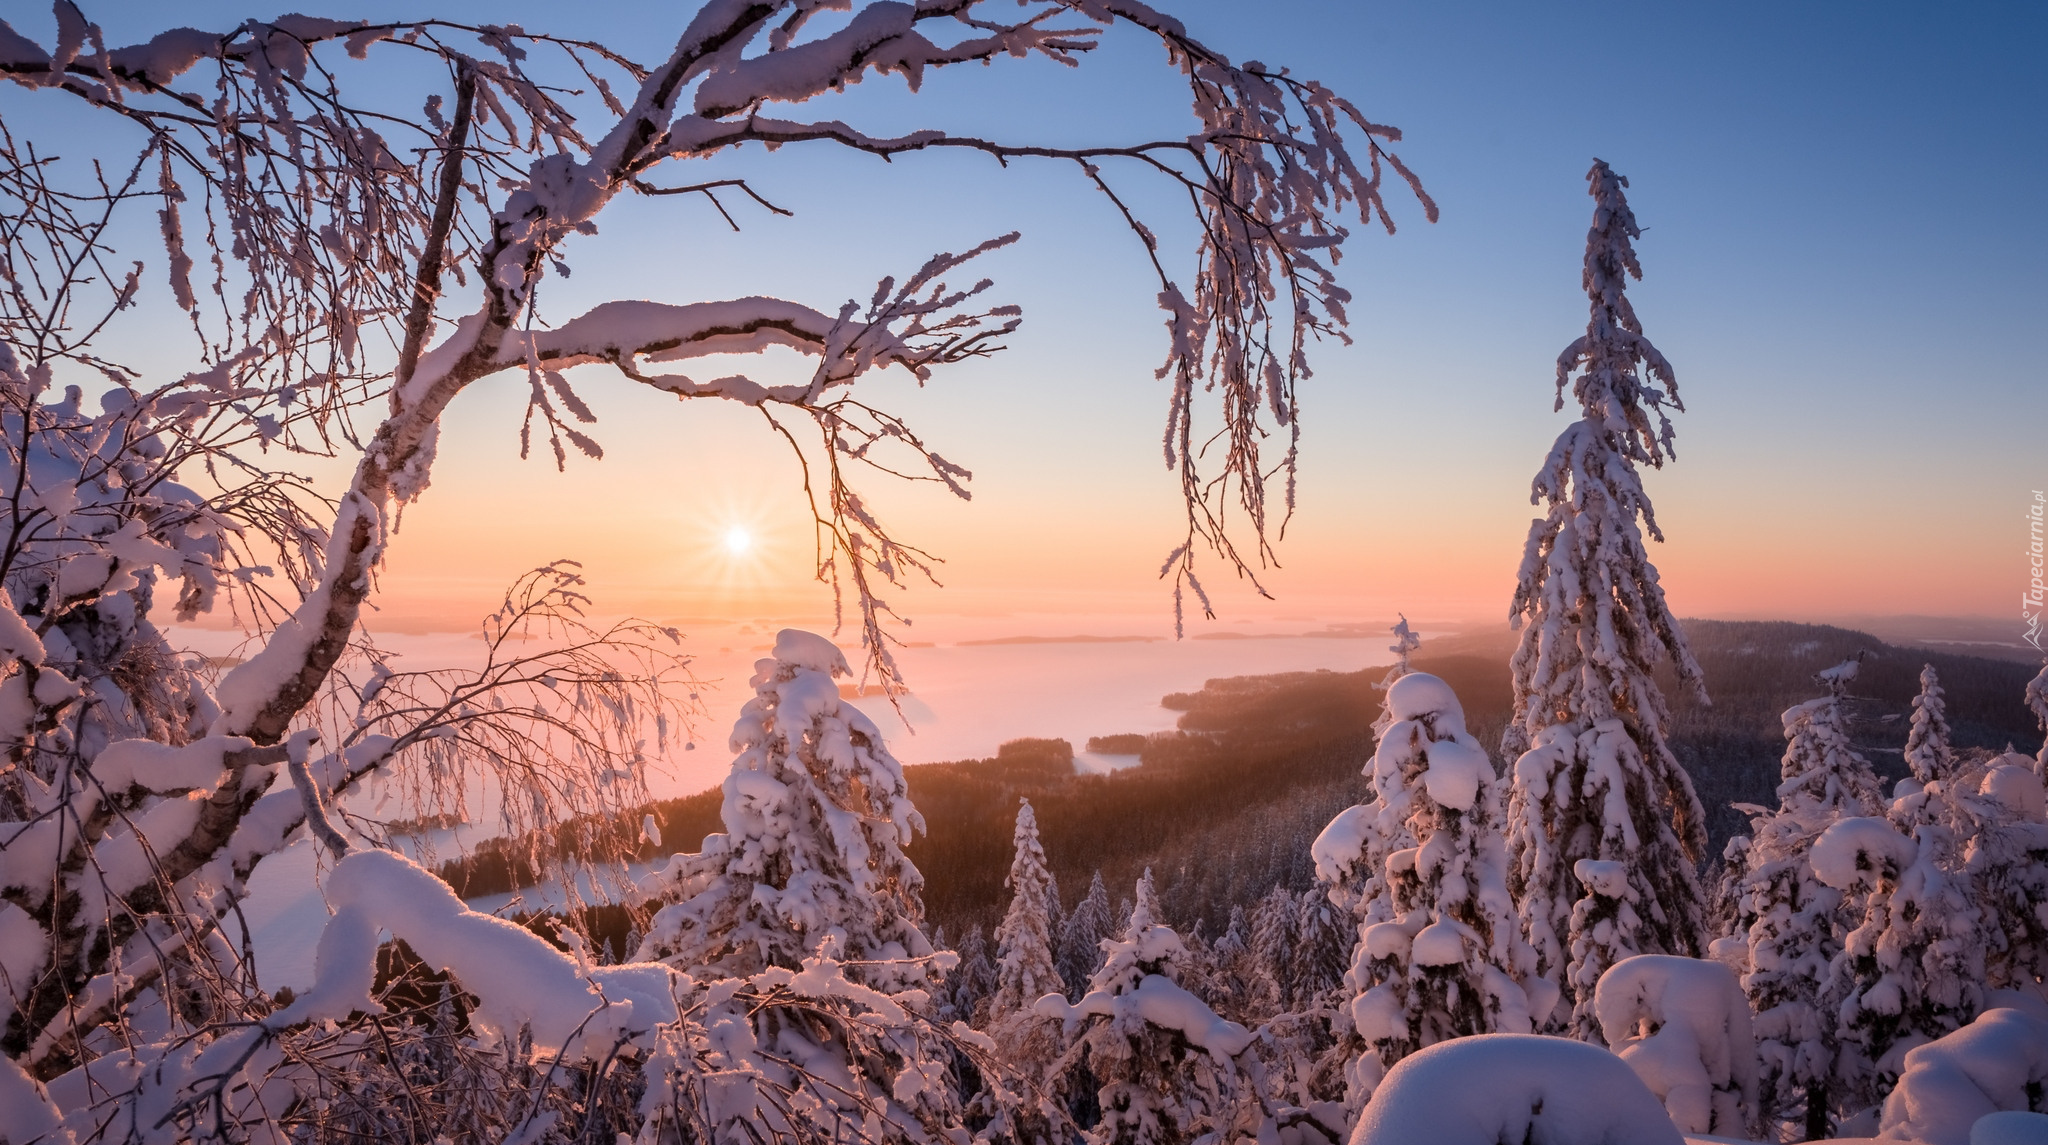 Finlandia, Region Karelia Północna, Park Narodowy Koli, Jezioro Pielinen, Zima, Drzewa, Promienie słońca, Mgła